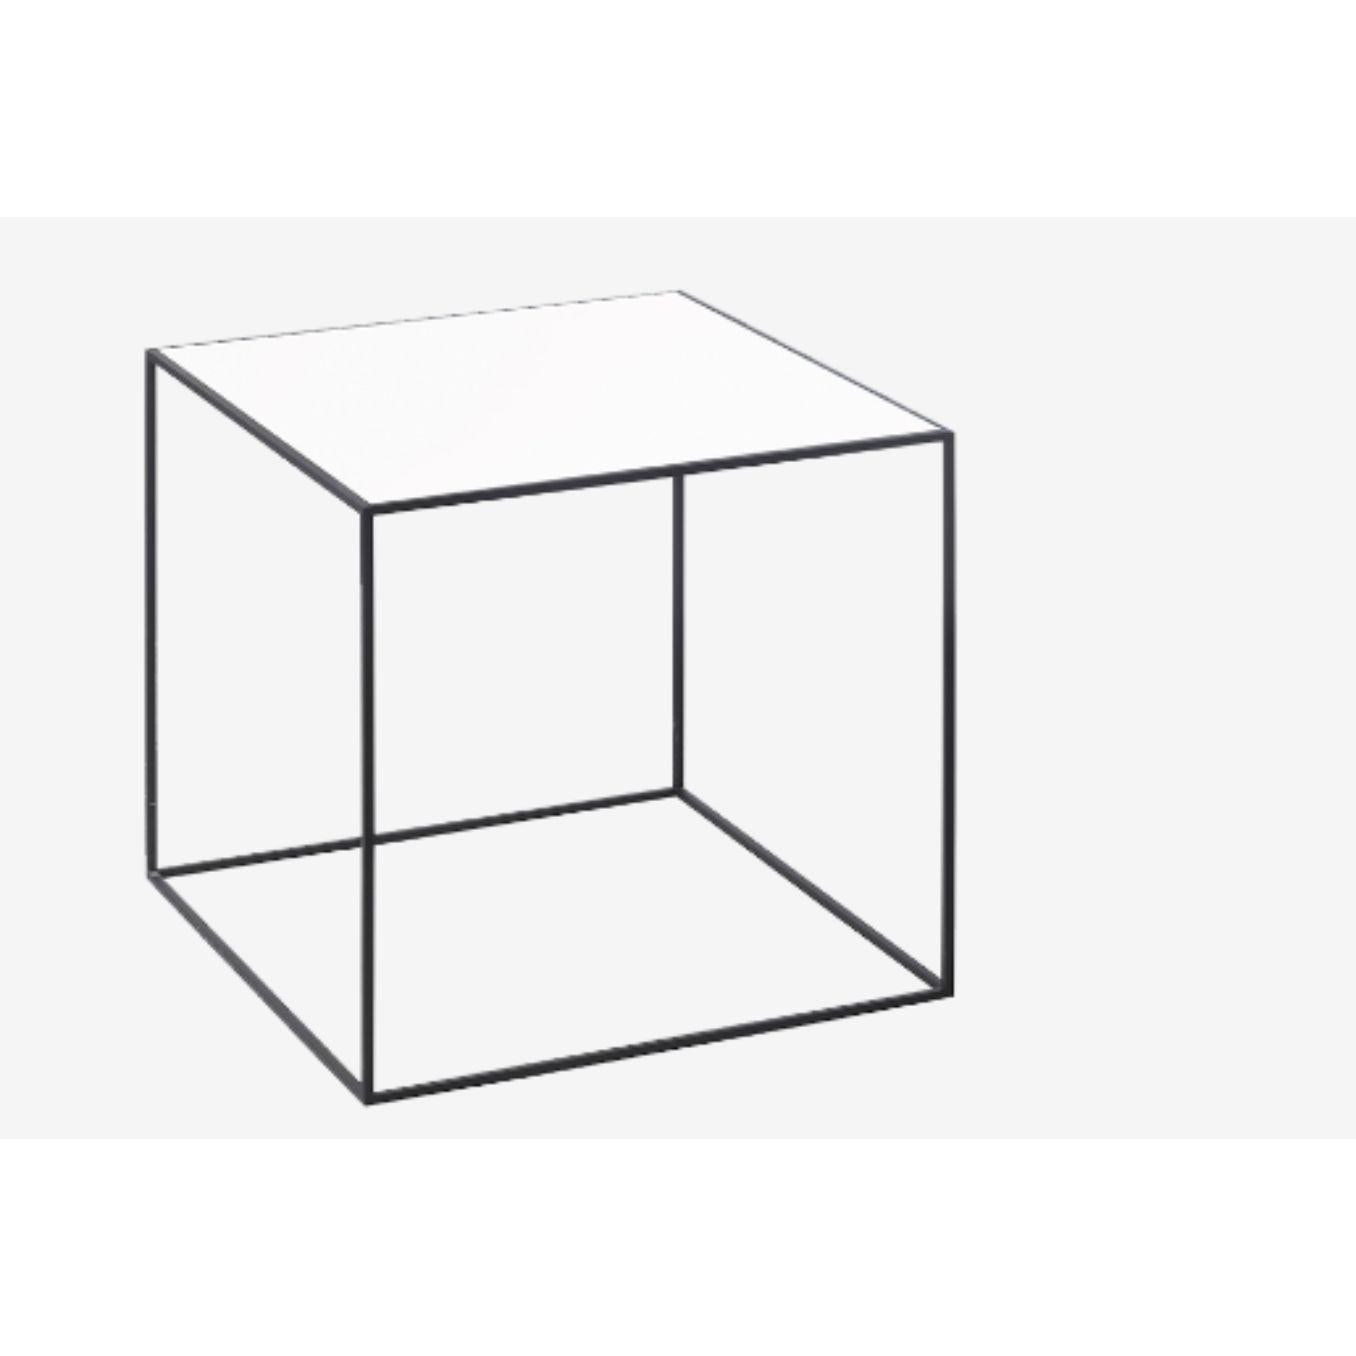 35 Plateau de table double en chêne blanc de Lassen
Dimensions : L 35 x P 35 x H 0,5 cm 
Matériaux : Finér, Mélamine, Mélamine, Métal, Placage, Chêne
Disponible également en différentes couleurs et dimensions.

D'une simplicité simple et faisant